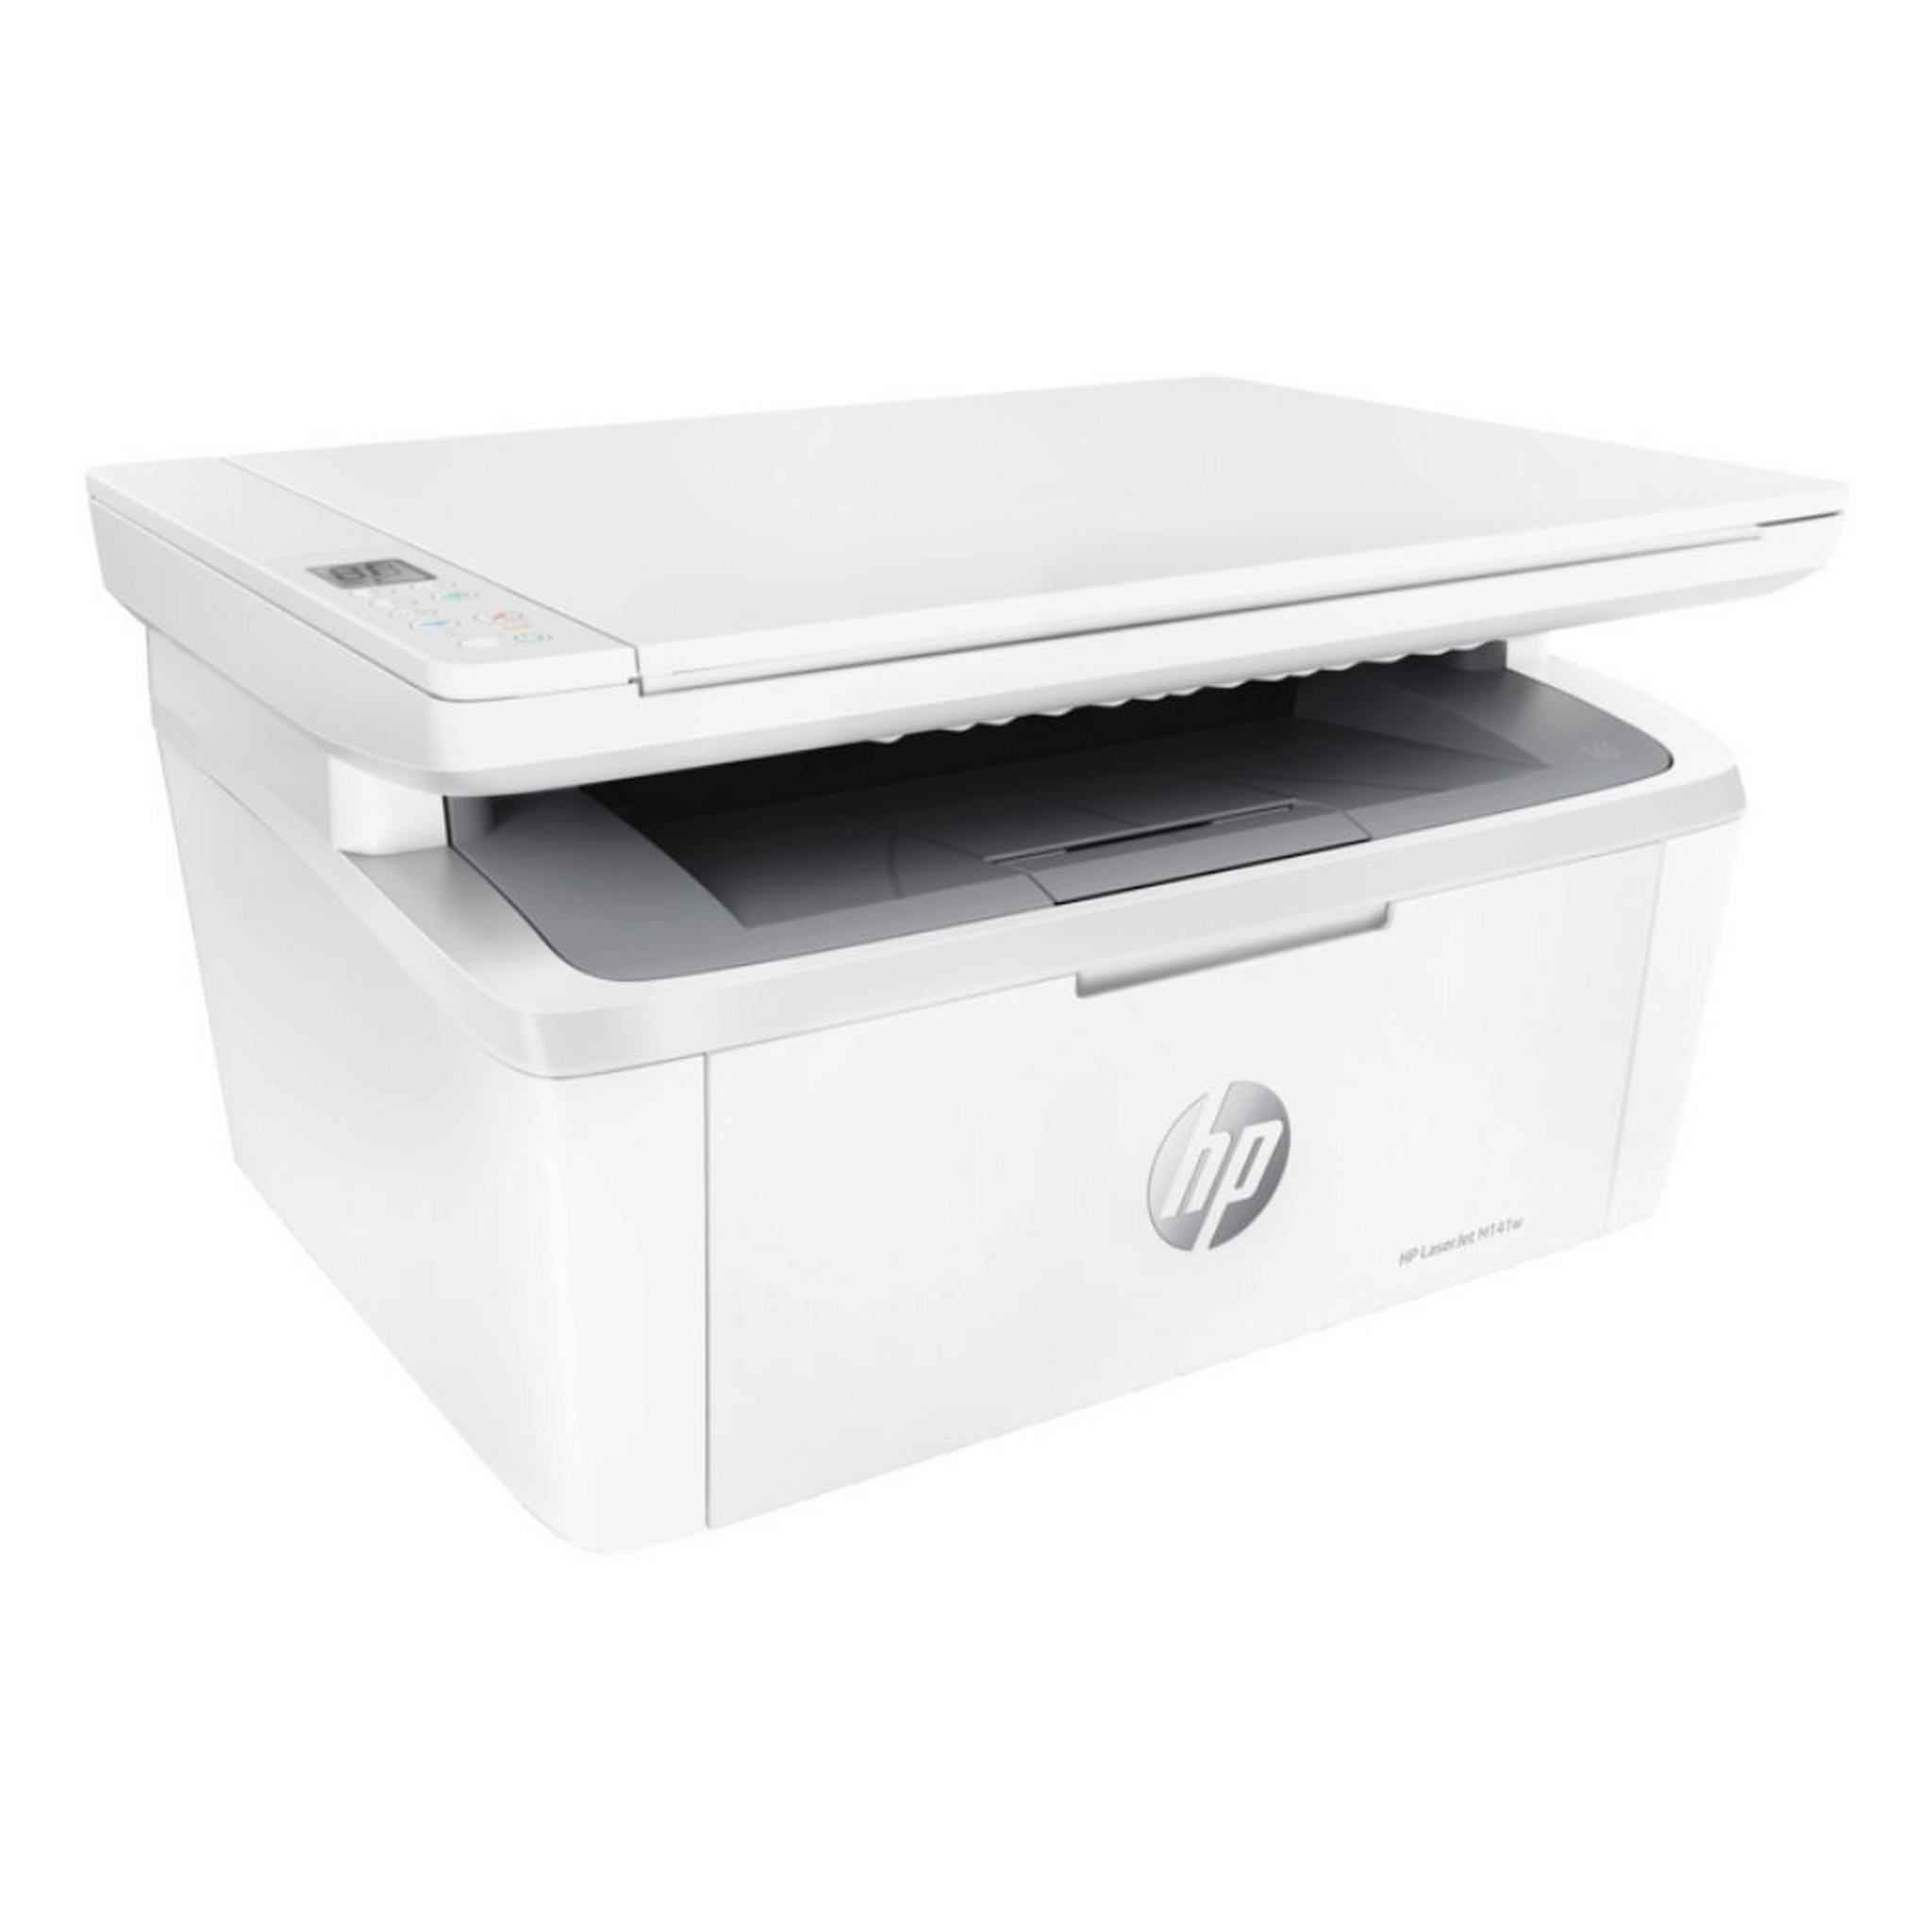 HP LaserJet MFP M141w Printer (7MD74A)